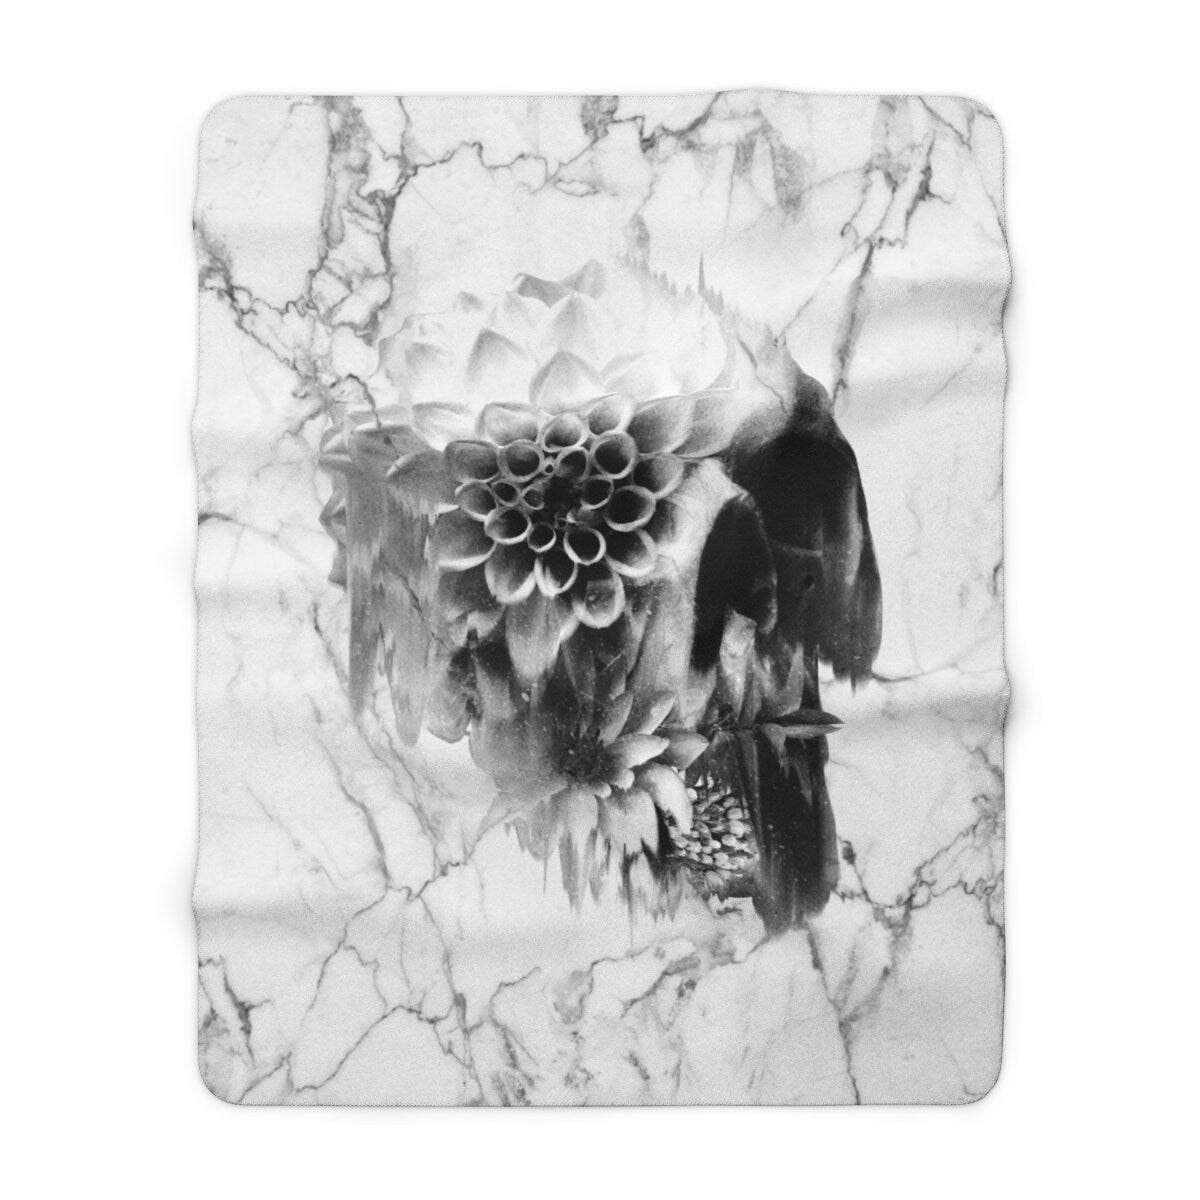 Marble Skull Sherpa Fleece Blanket, Sugar Skull Cozy Fleece Blanket, Floral Skull Plush Back Fluffy Throw Blanket, Gothic Home Decor Gift